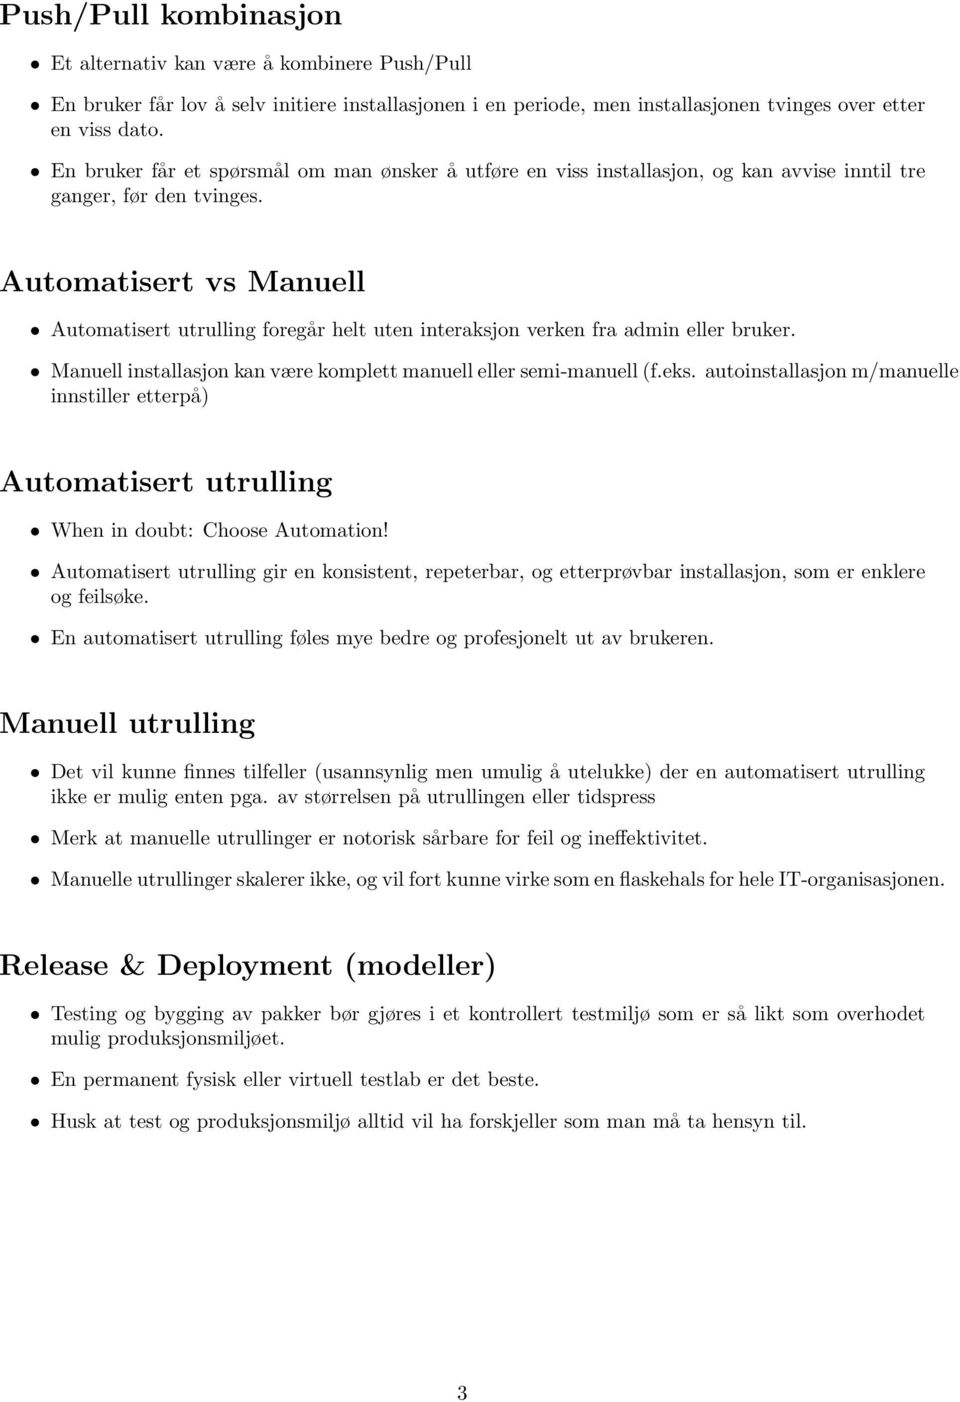 Automatisert vs Manuell Automatisert utrulling foregår helt uten interaksjon verken fra admin eller bruker. Manuell installasjon kan være komplett manuell eller semi-manuell (f.eks.